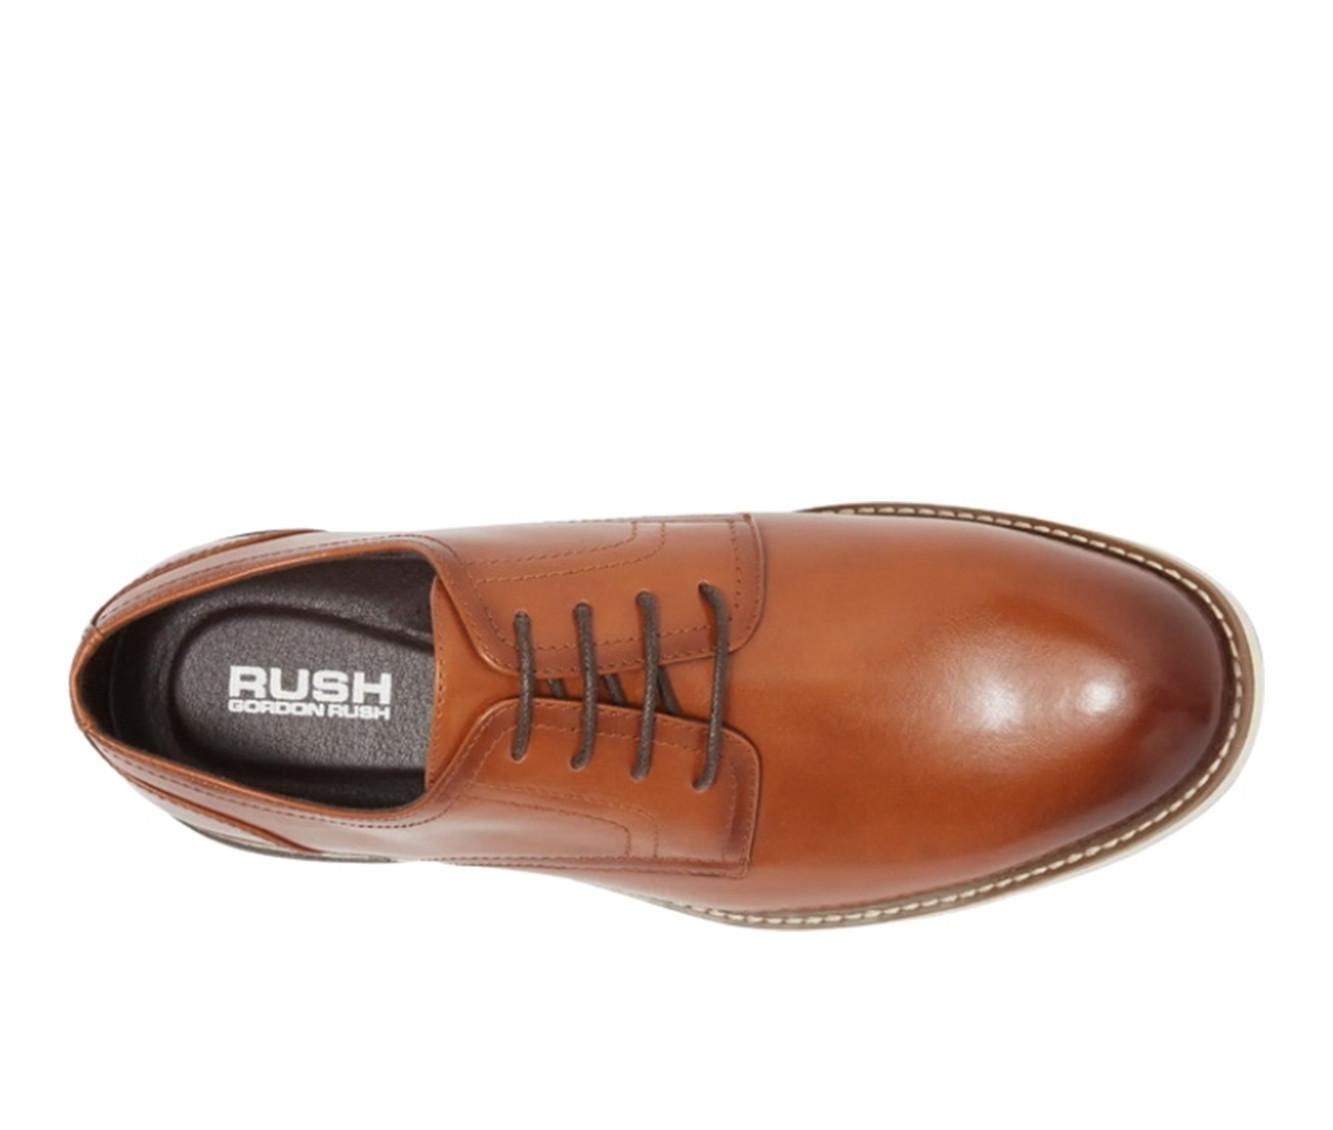 Men's RUSH Gordon Rush Plain Toe Oxford Dress Shoes